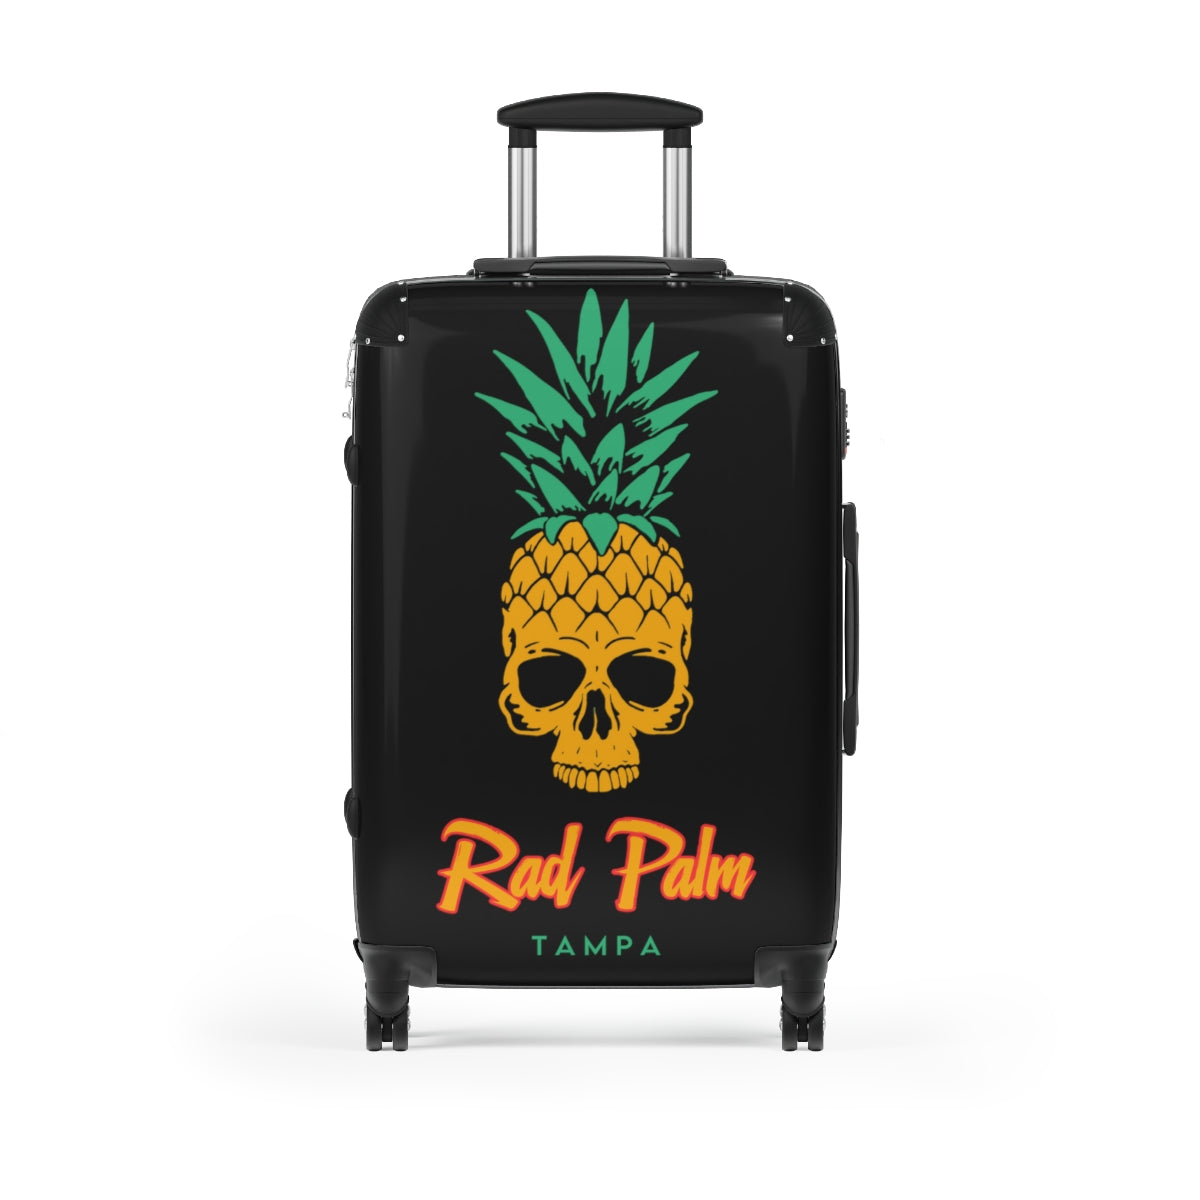 Rad Palm Pineapple Skull Travel Roller Bag